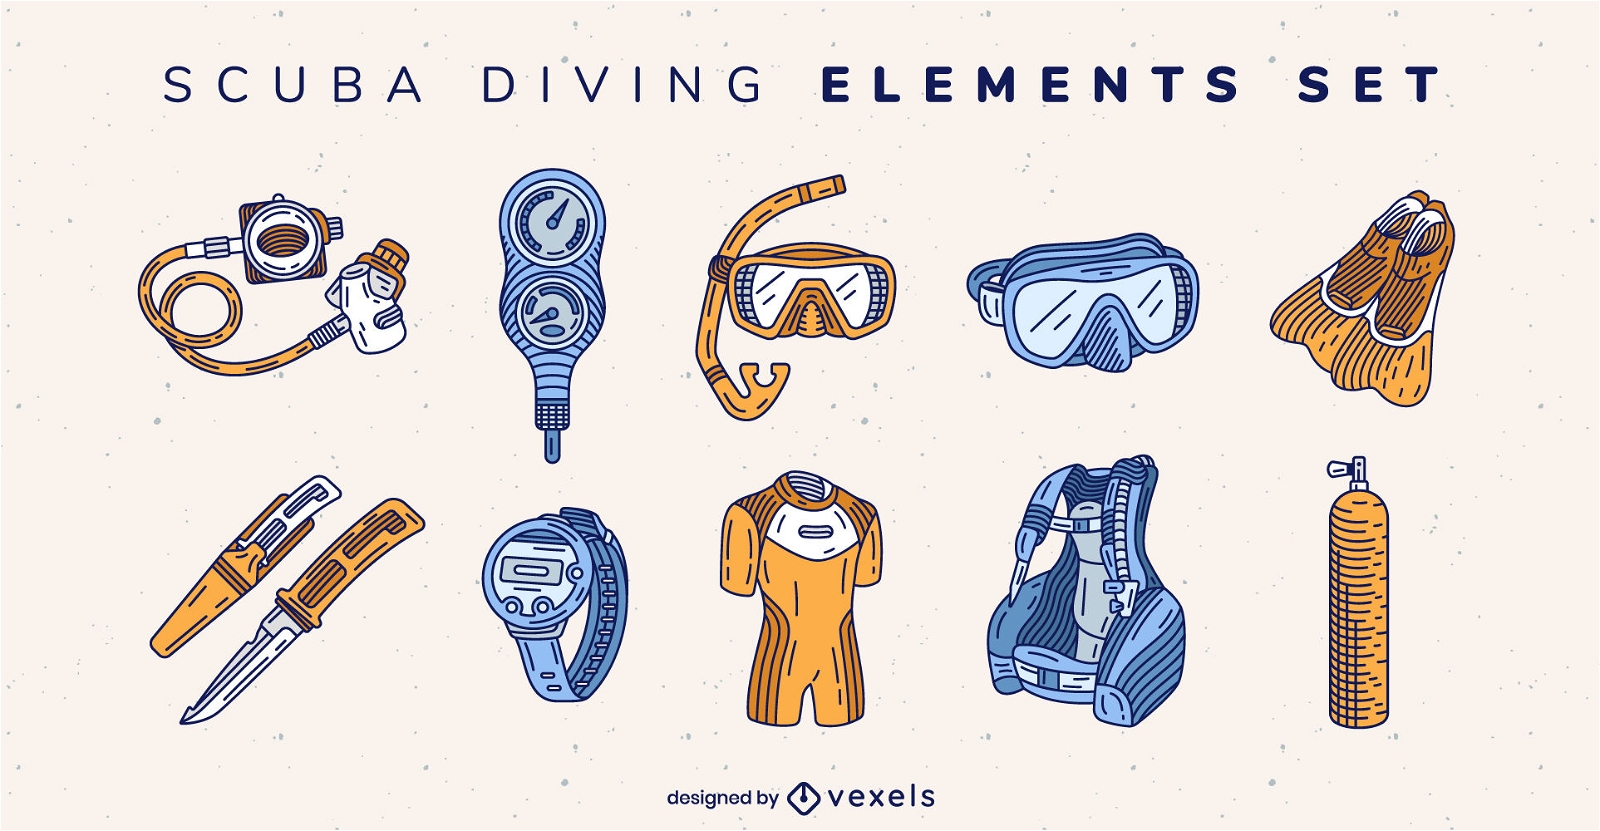 Scuba diving equipment elements set